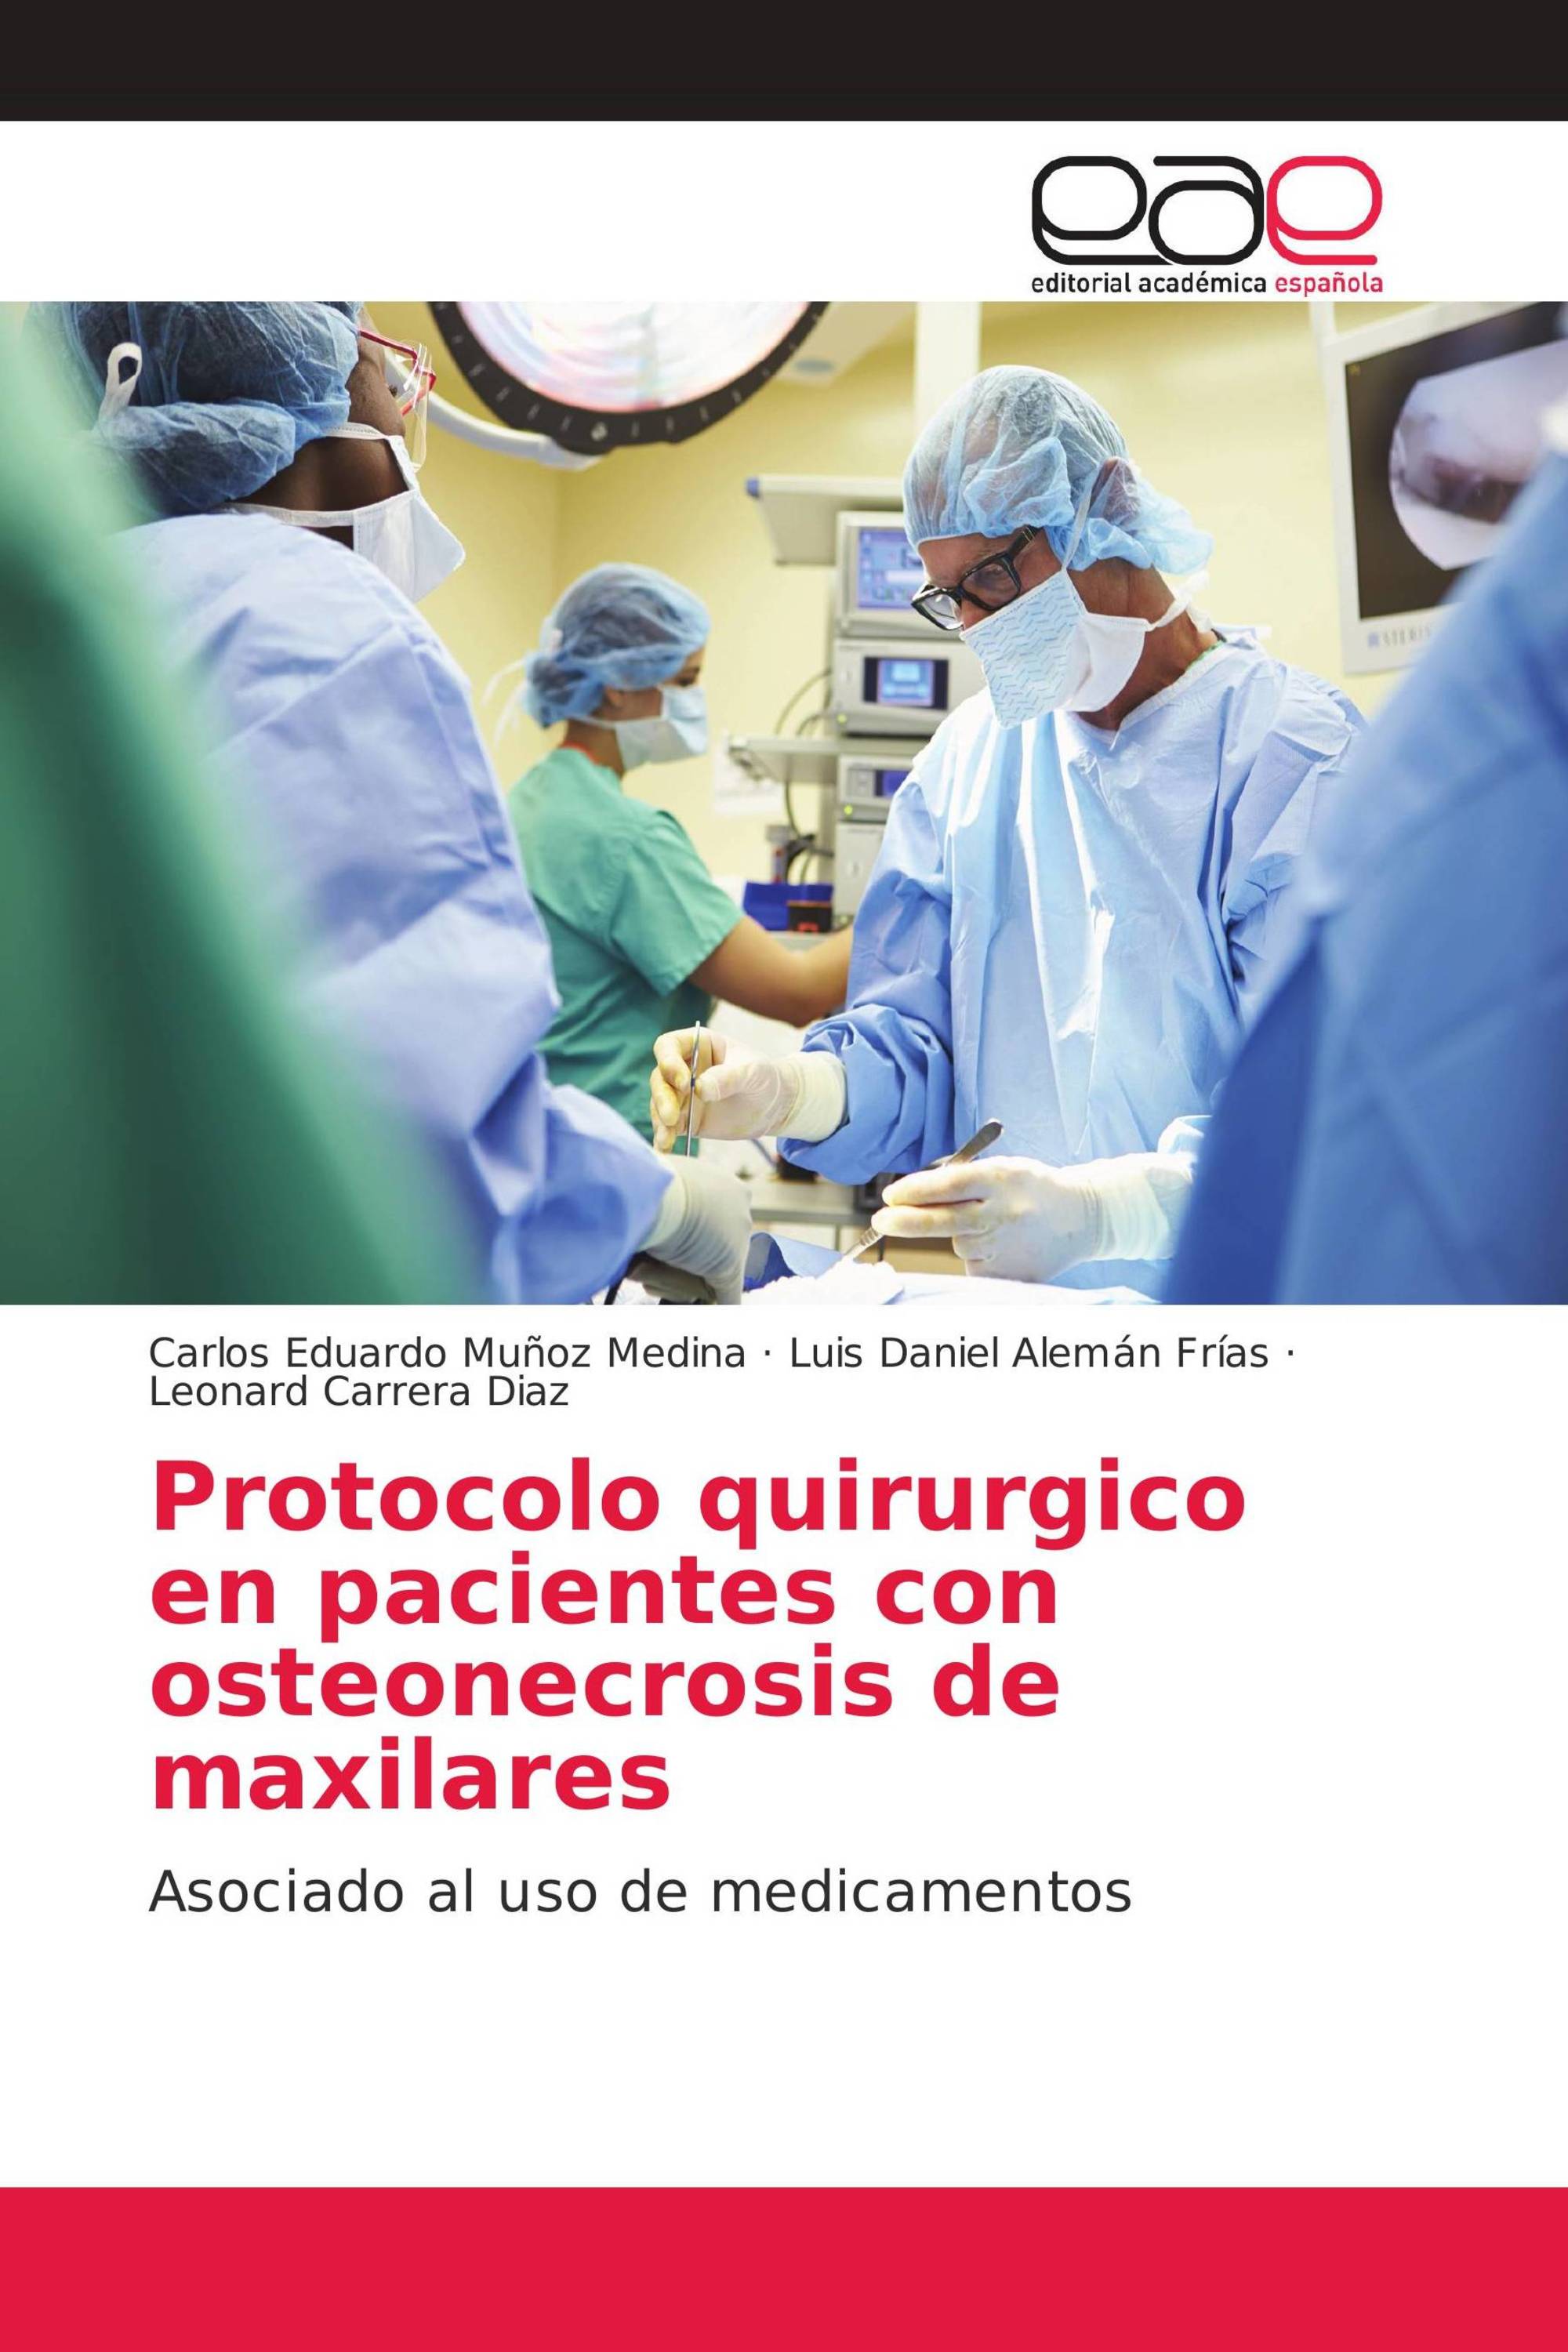 Protocolo quirurgico en pacientes con osteonecrosis de maxilares